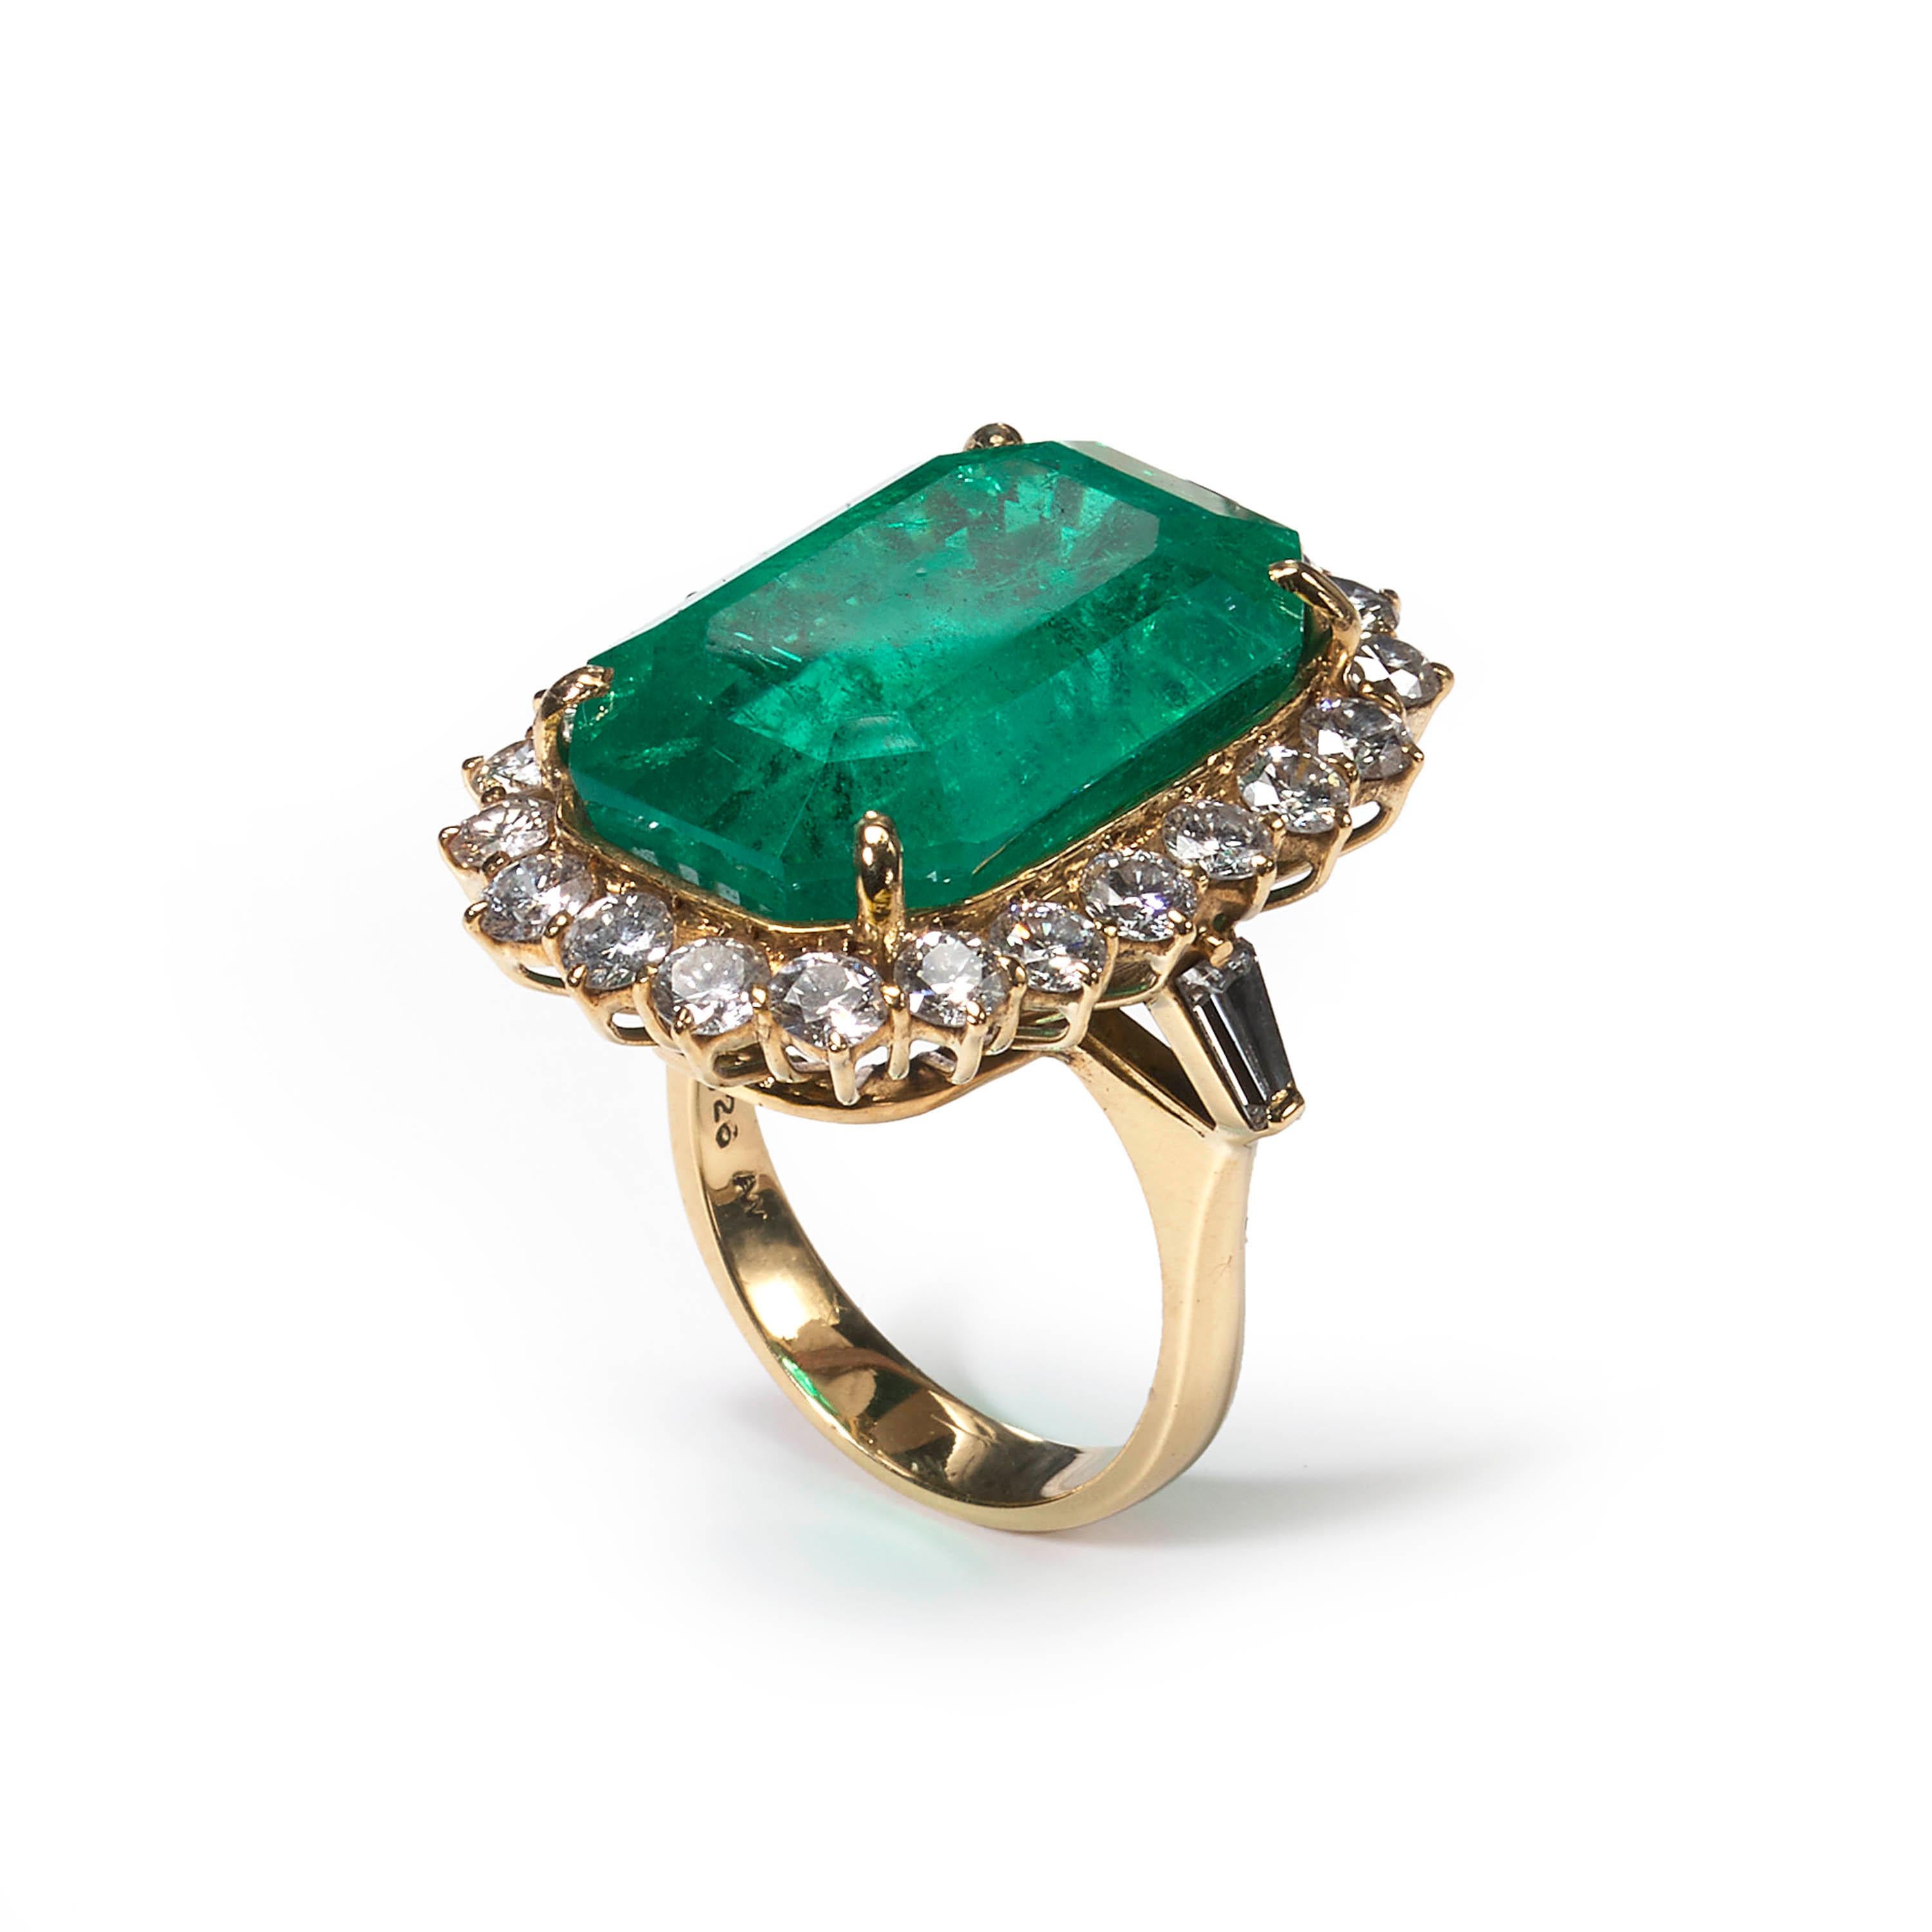 Ein Smaragd- und Diamantenring, besetzt mit einem zentralen Smaragd kolumbianischen Ursprungs im Smaragdschliff mit einem geschätzten Gewicht von 21,00ct, umgeben von zweiundzwanzig runden Diamanten im Brillantschliff mit einem geschätzten